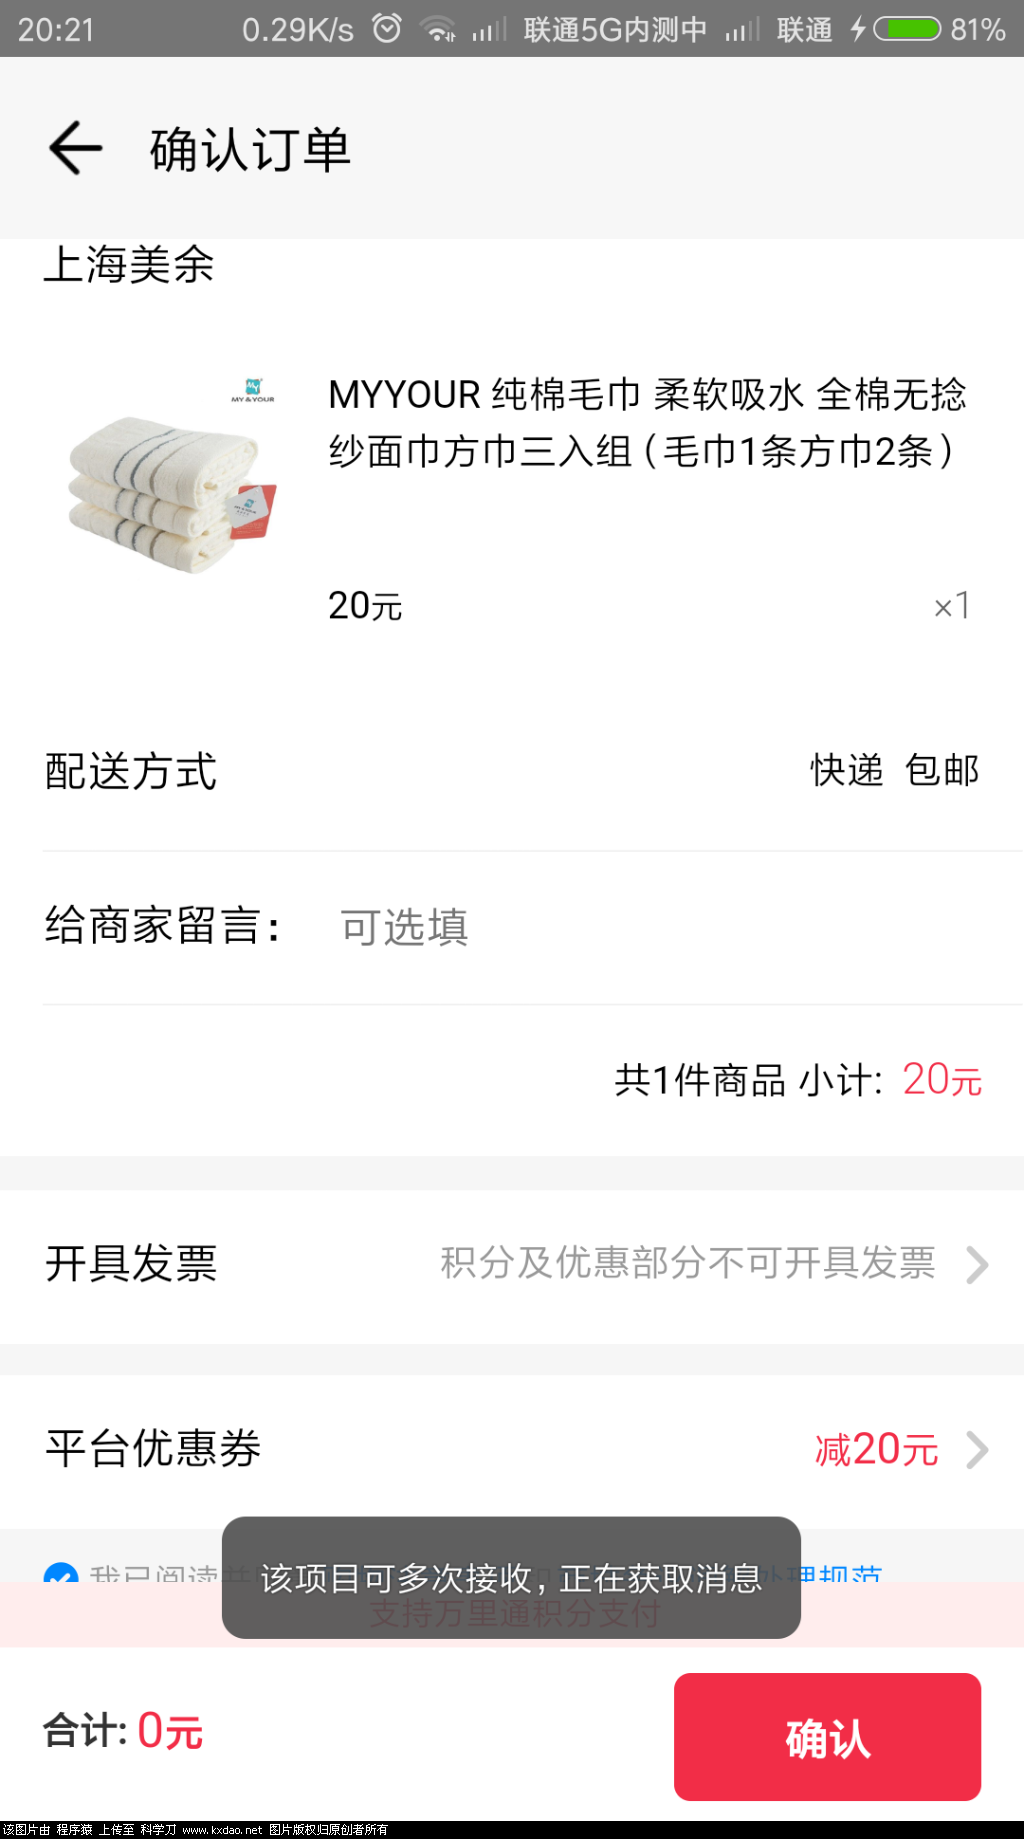 Screenshot_2018-07-24-20-21-50-423_com.paic.zhifu.wallet.activity.png